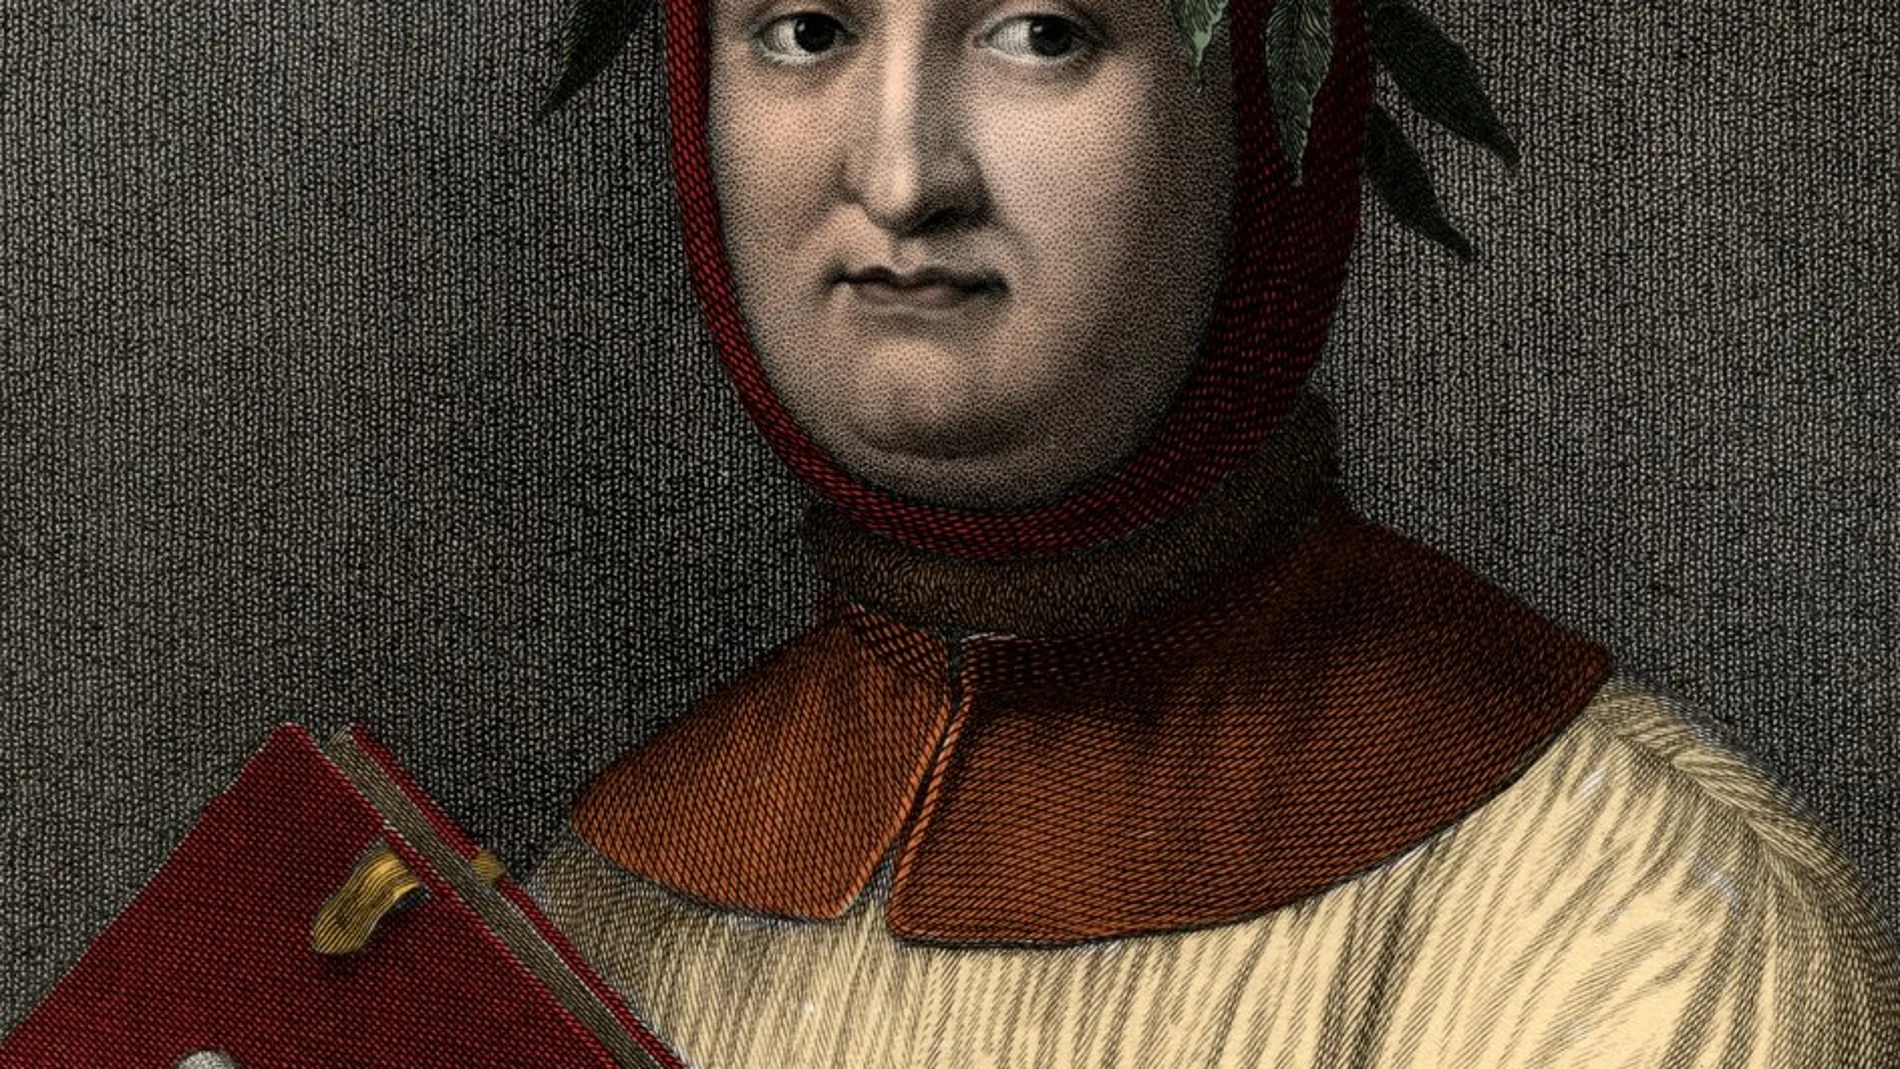 Grabado de Petrarca, del siglo XIV, que puede verse en la Galleria 